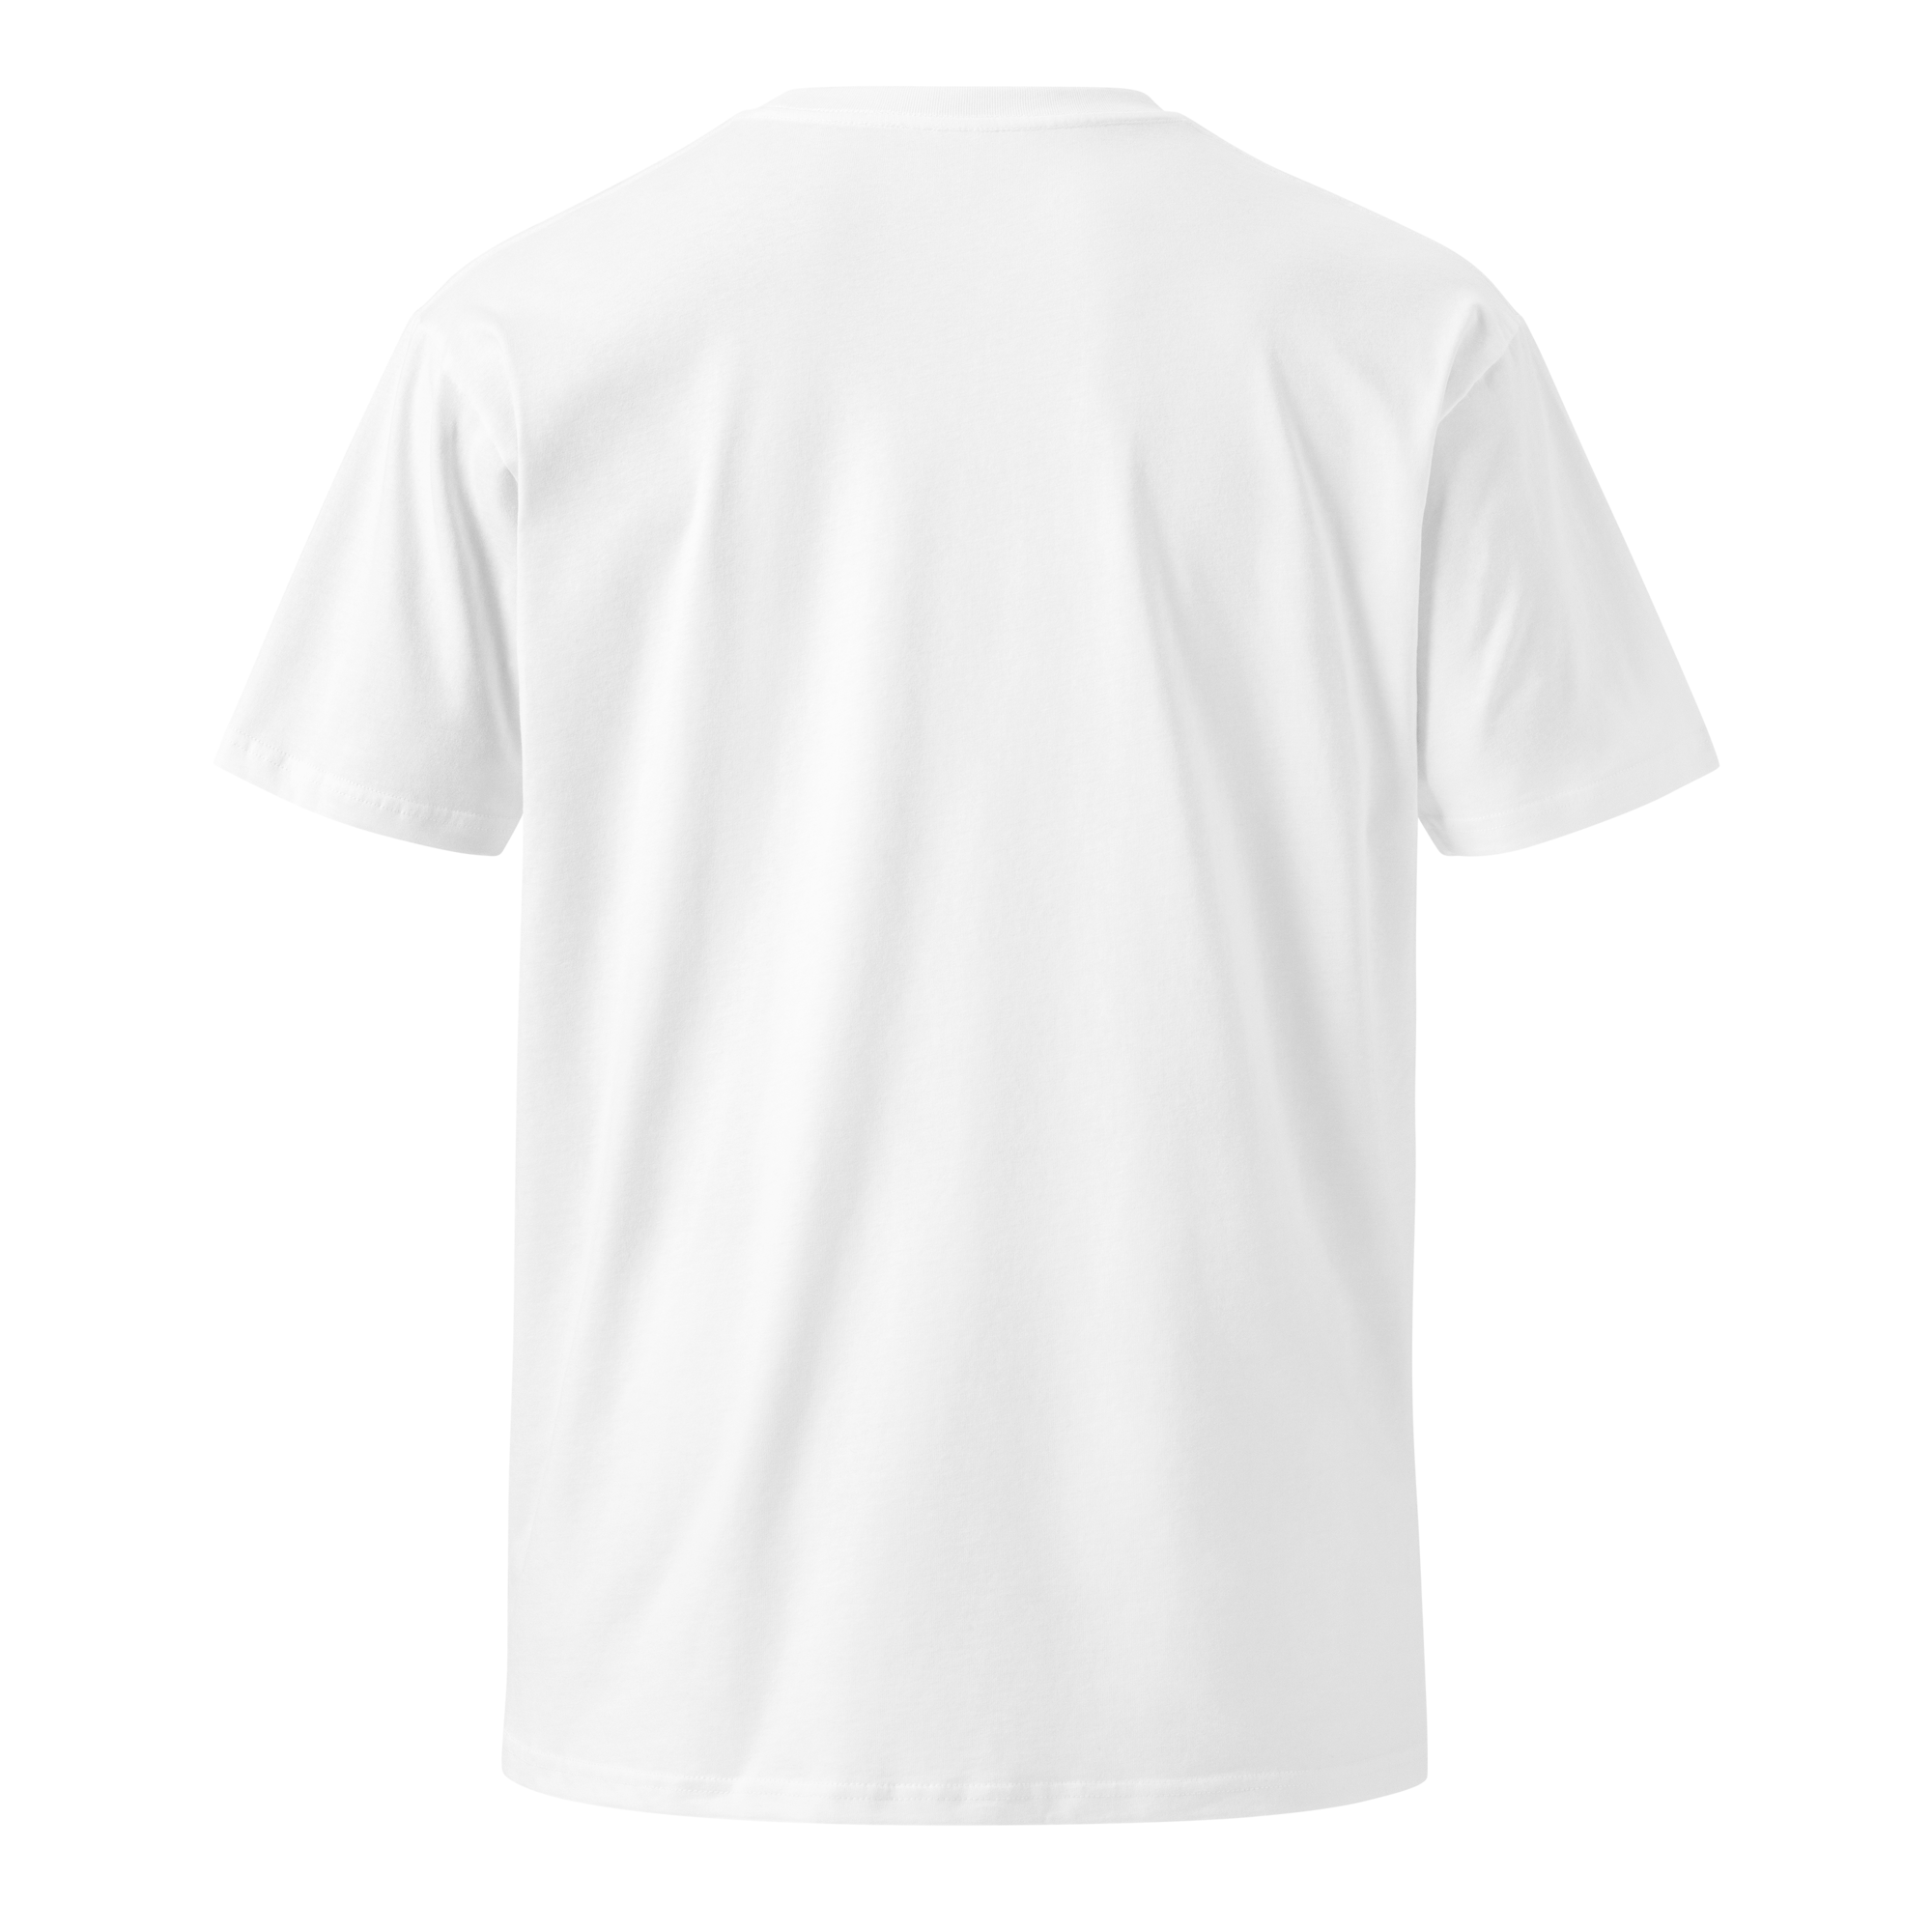 Unisex premium t-shirt